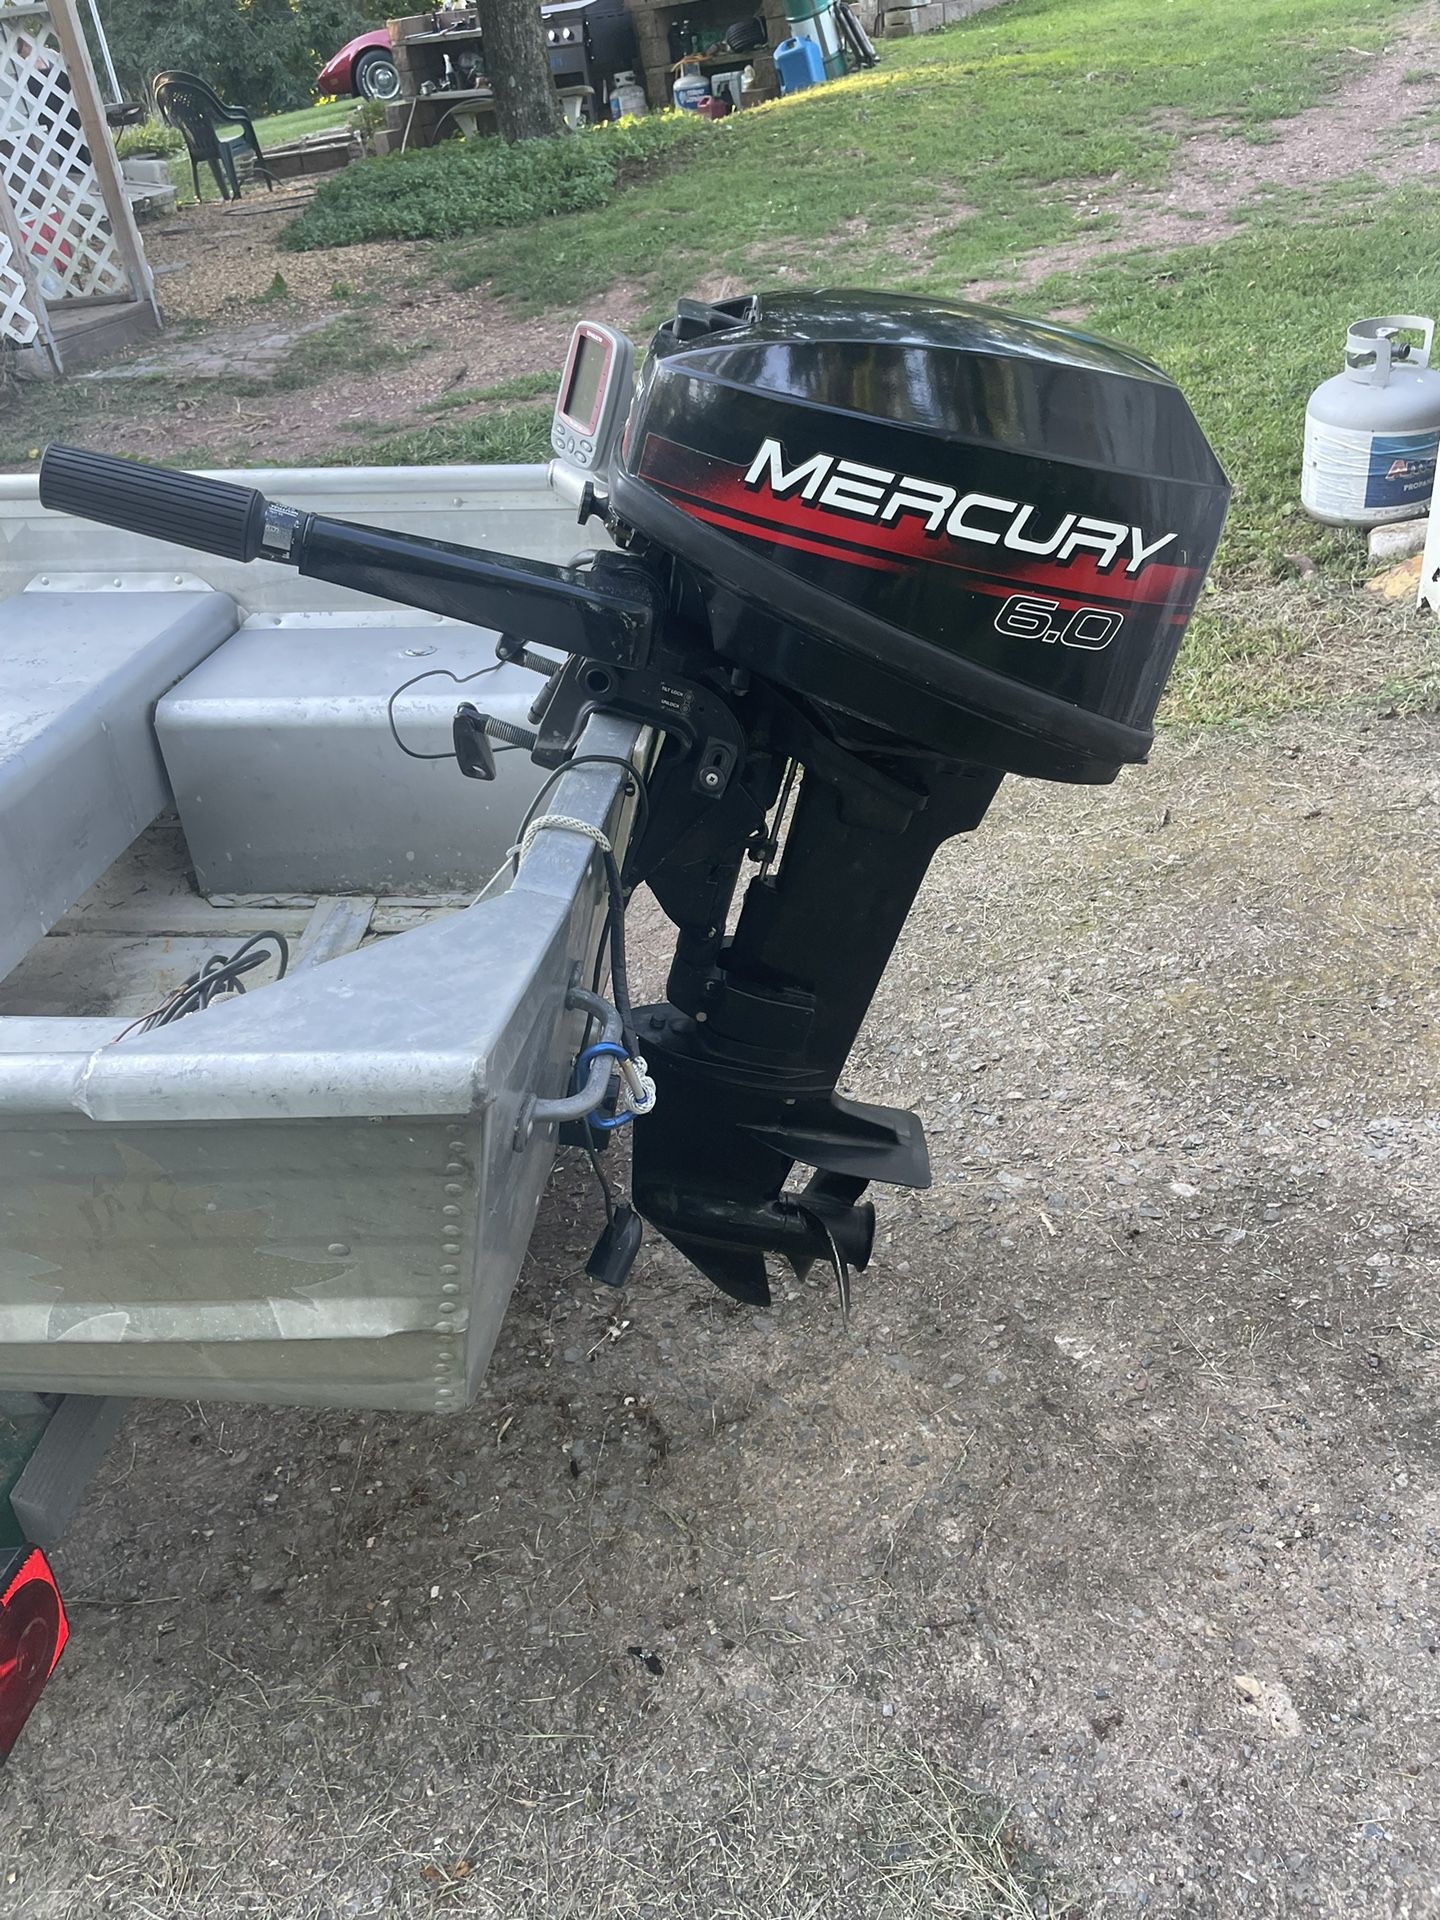 Mercury 6hp Outboard Boat Motor